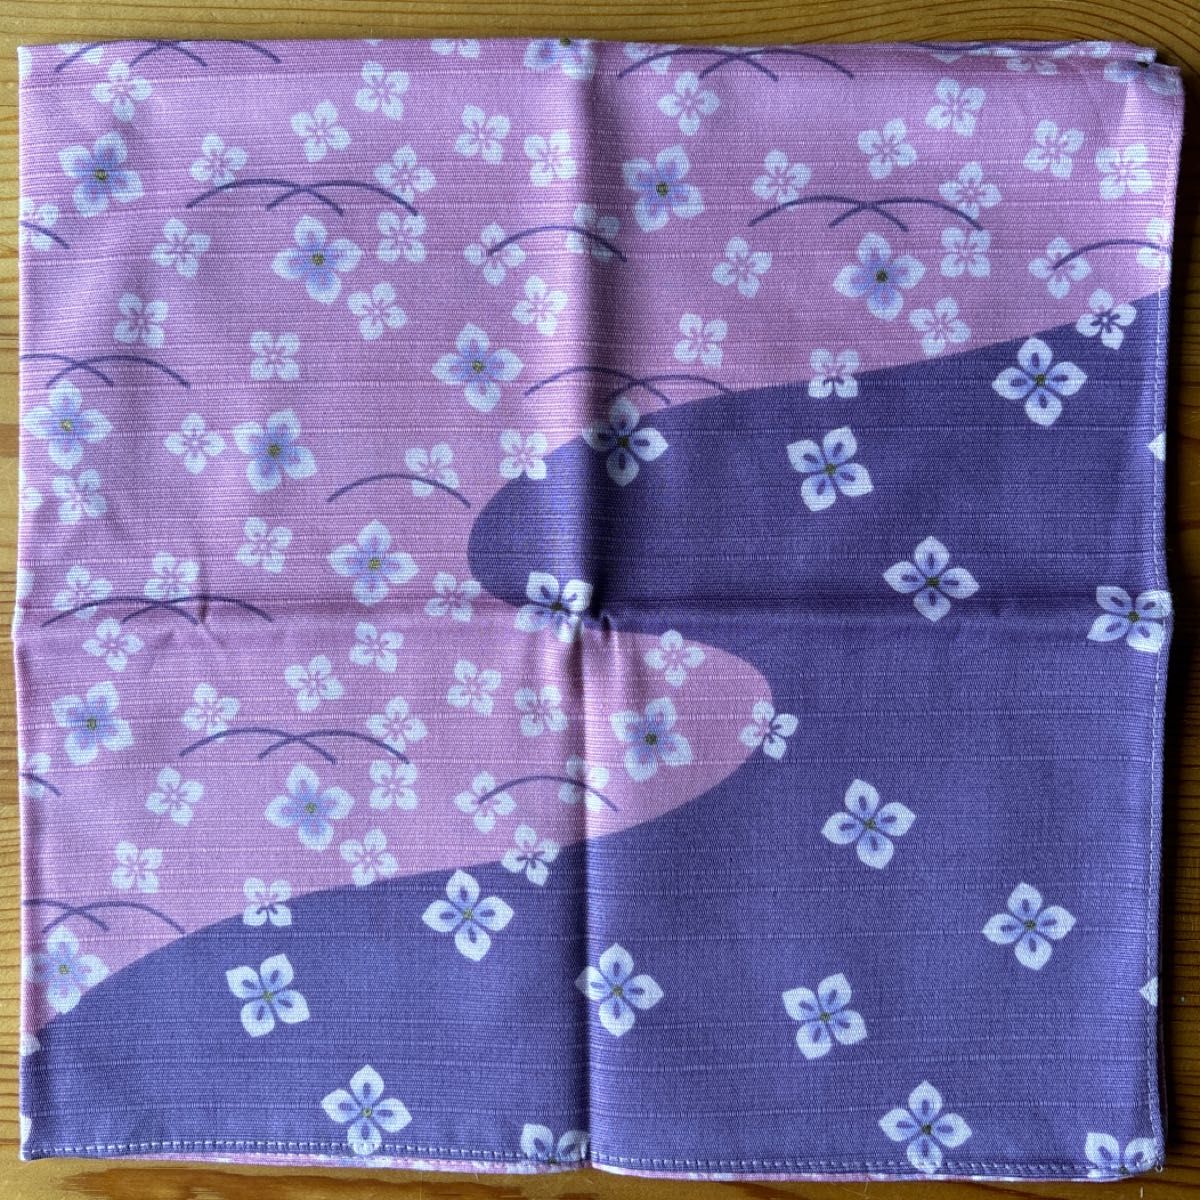 小風呂敷(ハンカチ) 2枚セット   紫陽花柄2色♪         しっかりした綿シャンタン生地    お弁当包みに!!